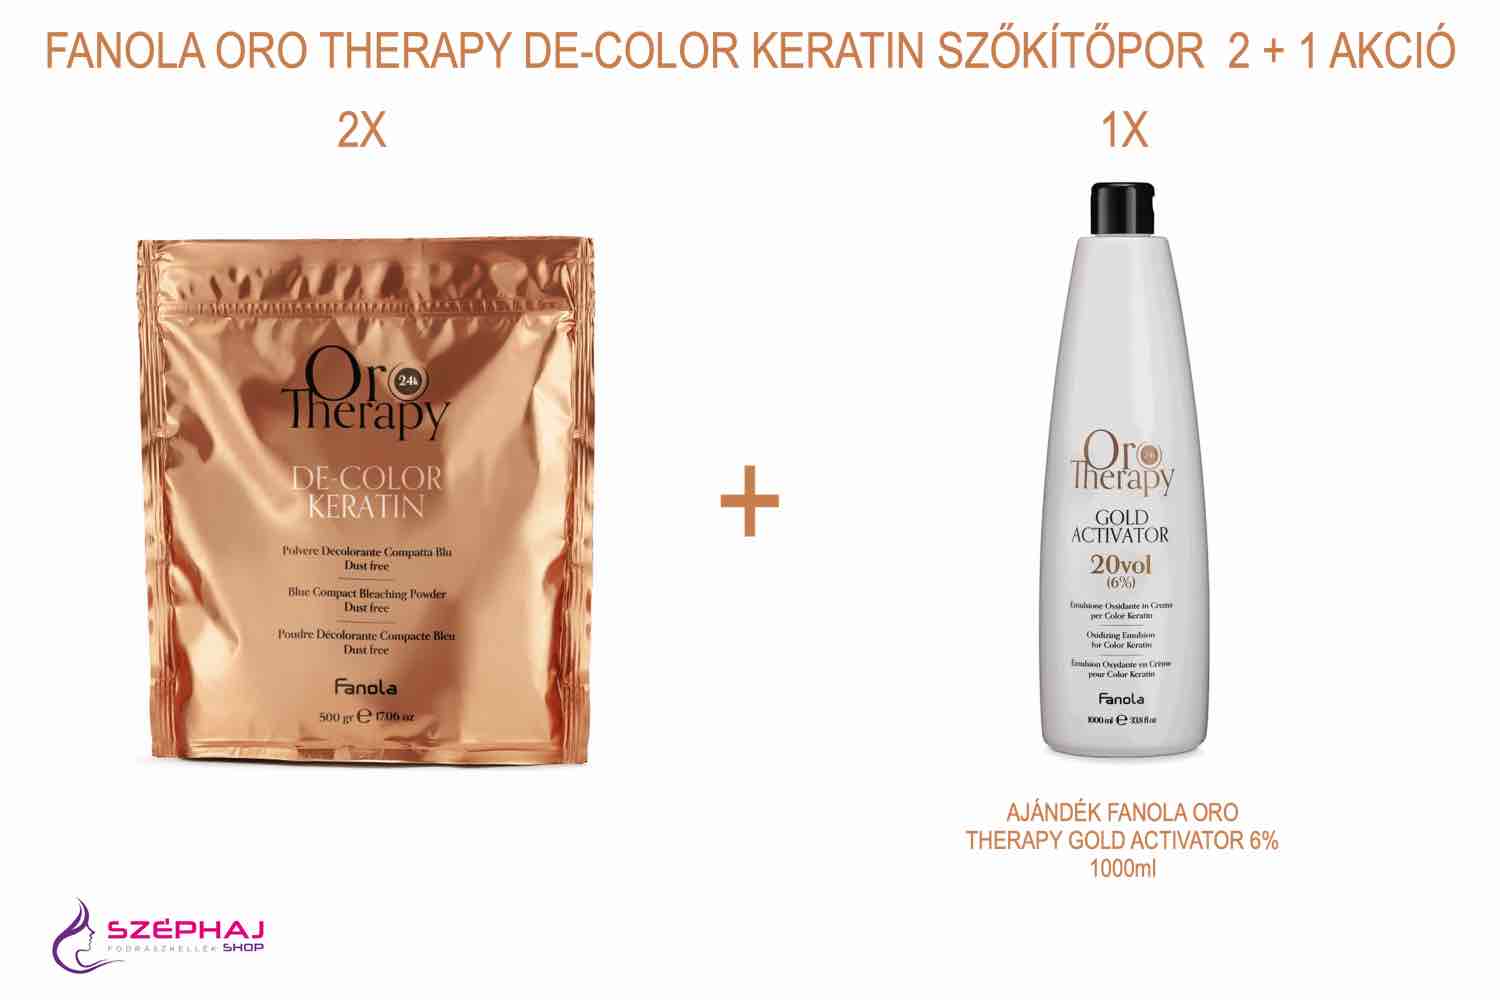 FANOLA ORO Therapy De-Color Keratin szőkítőpor 500g 2 + 1 AKCIÓ